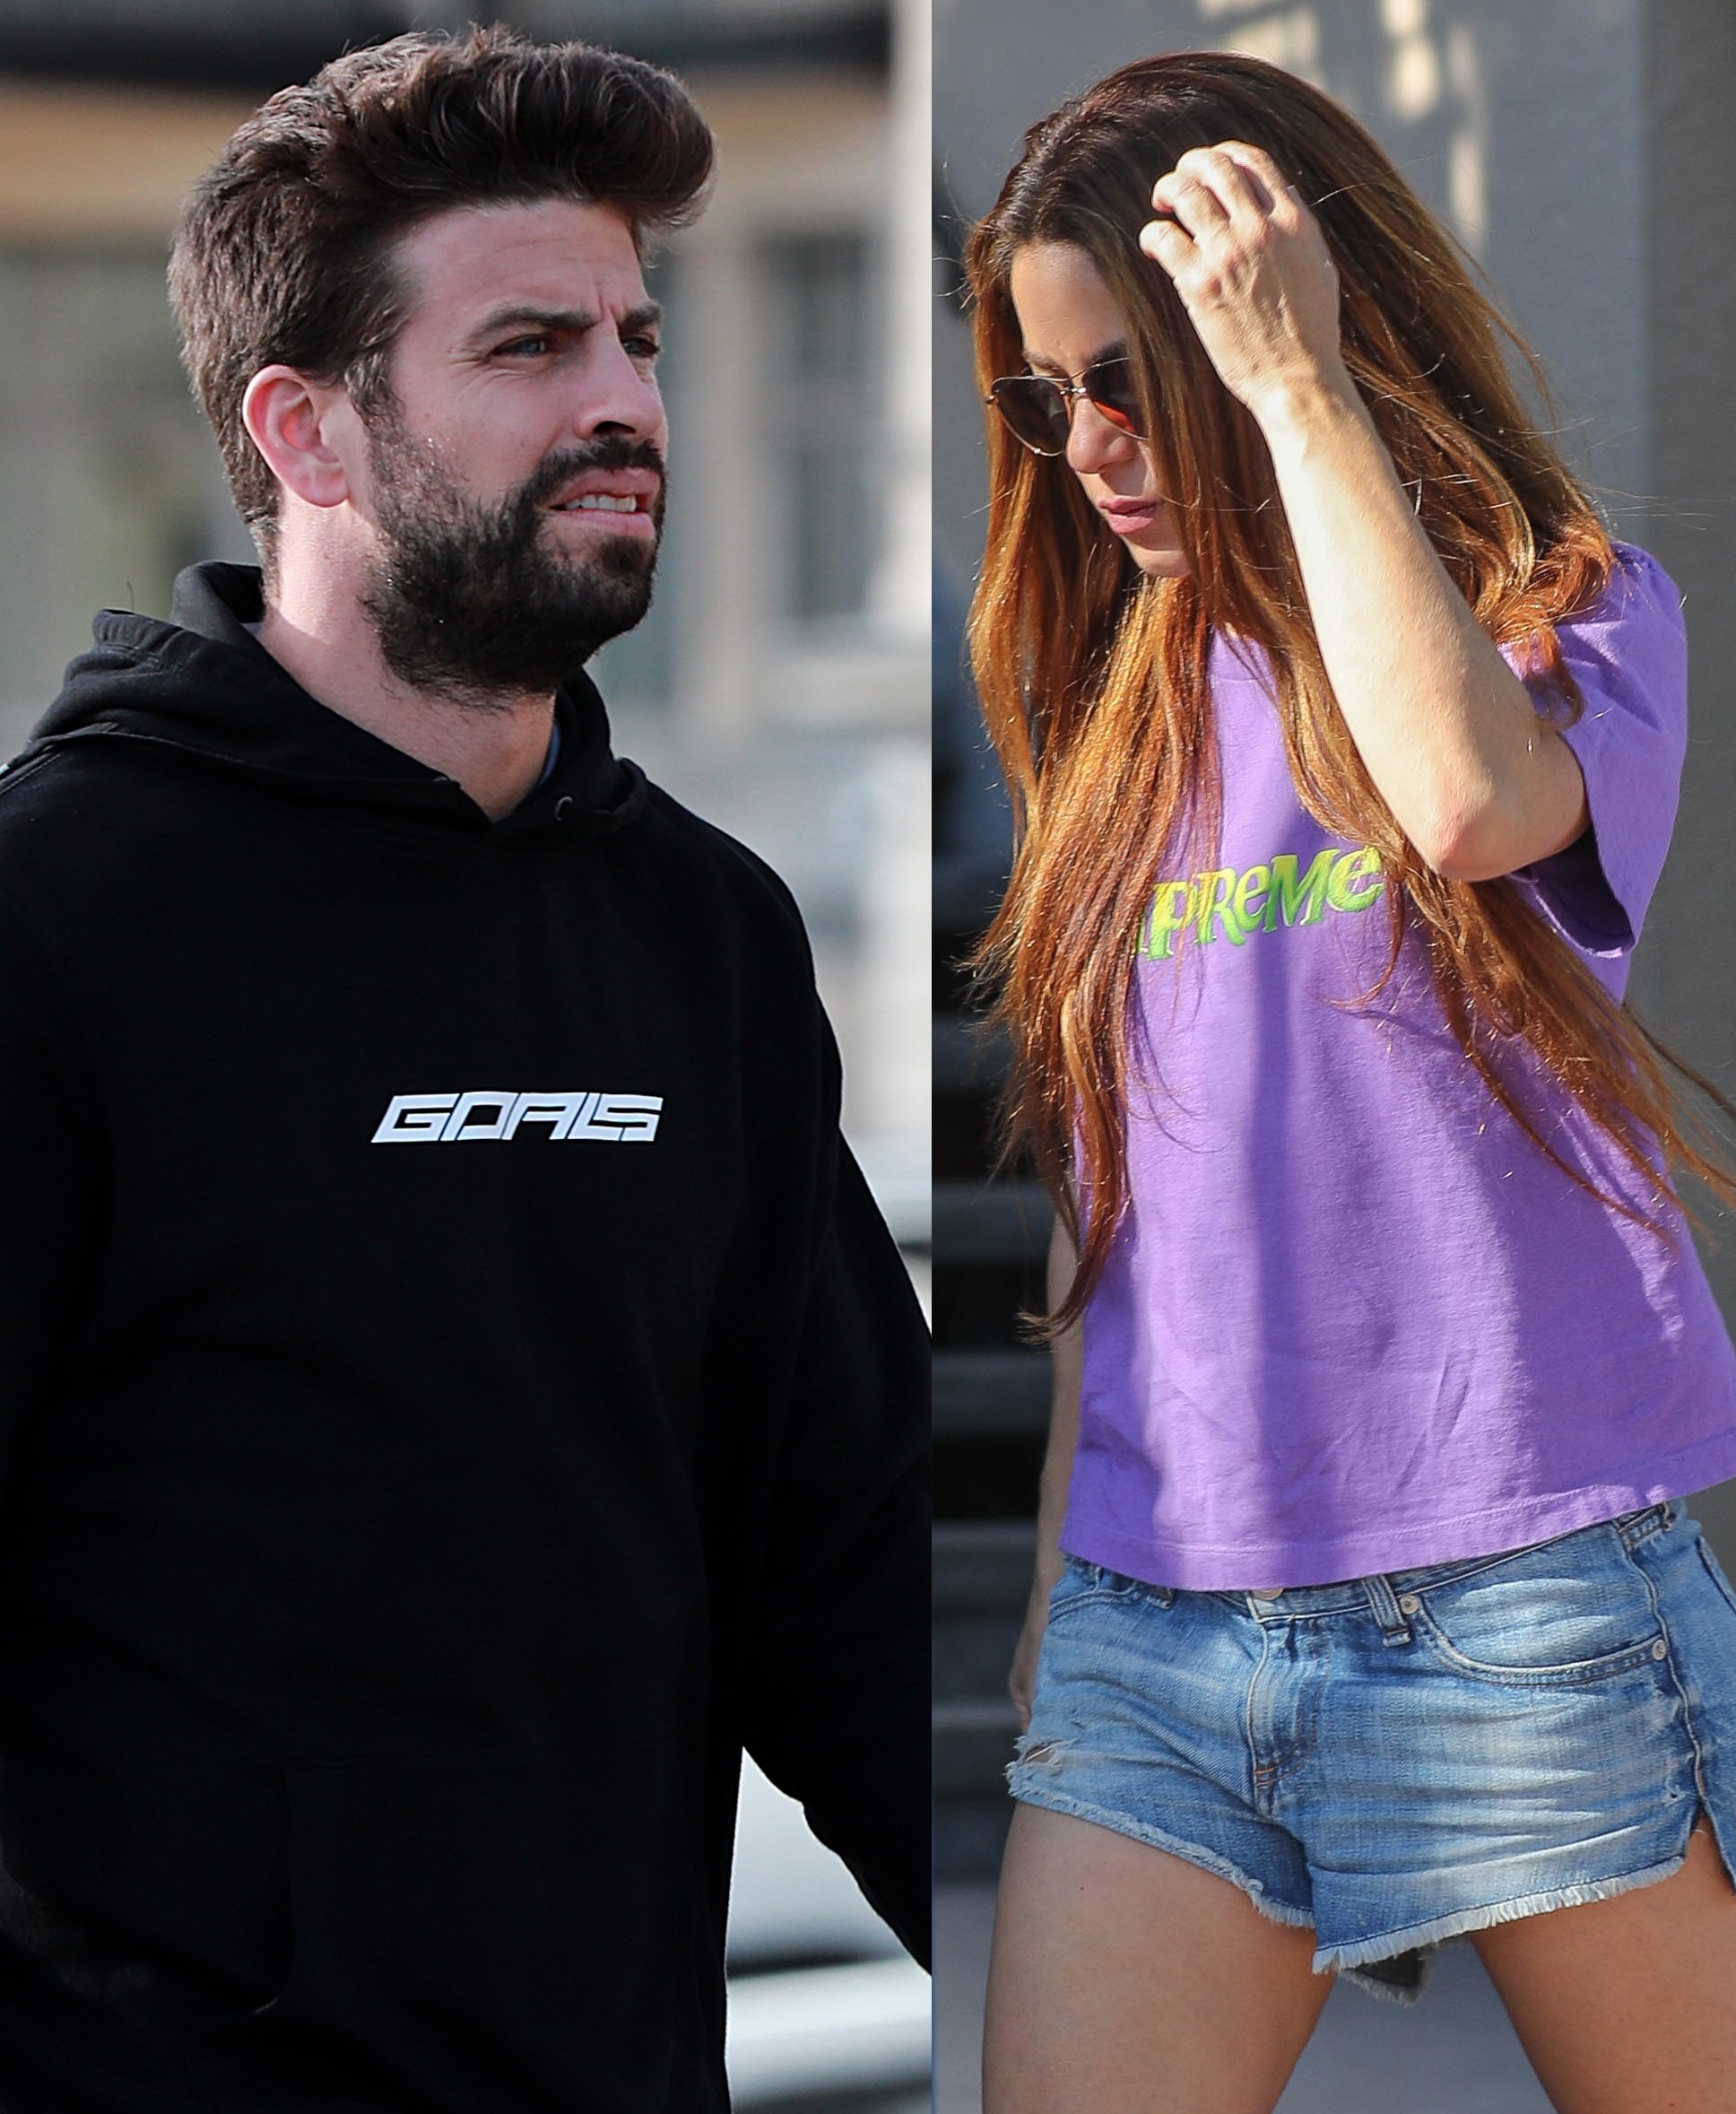 La batalla por los hijos de Piqué y Shakira ya ha empezado: fin de semana movido